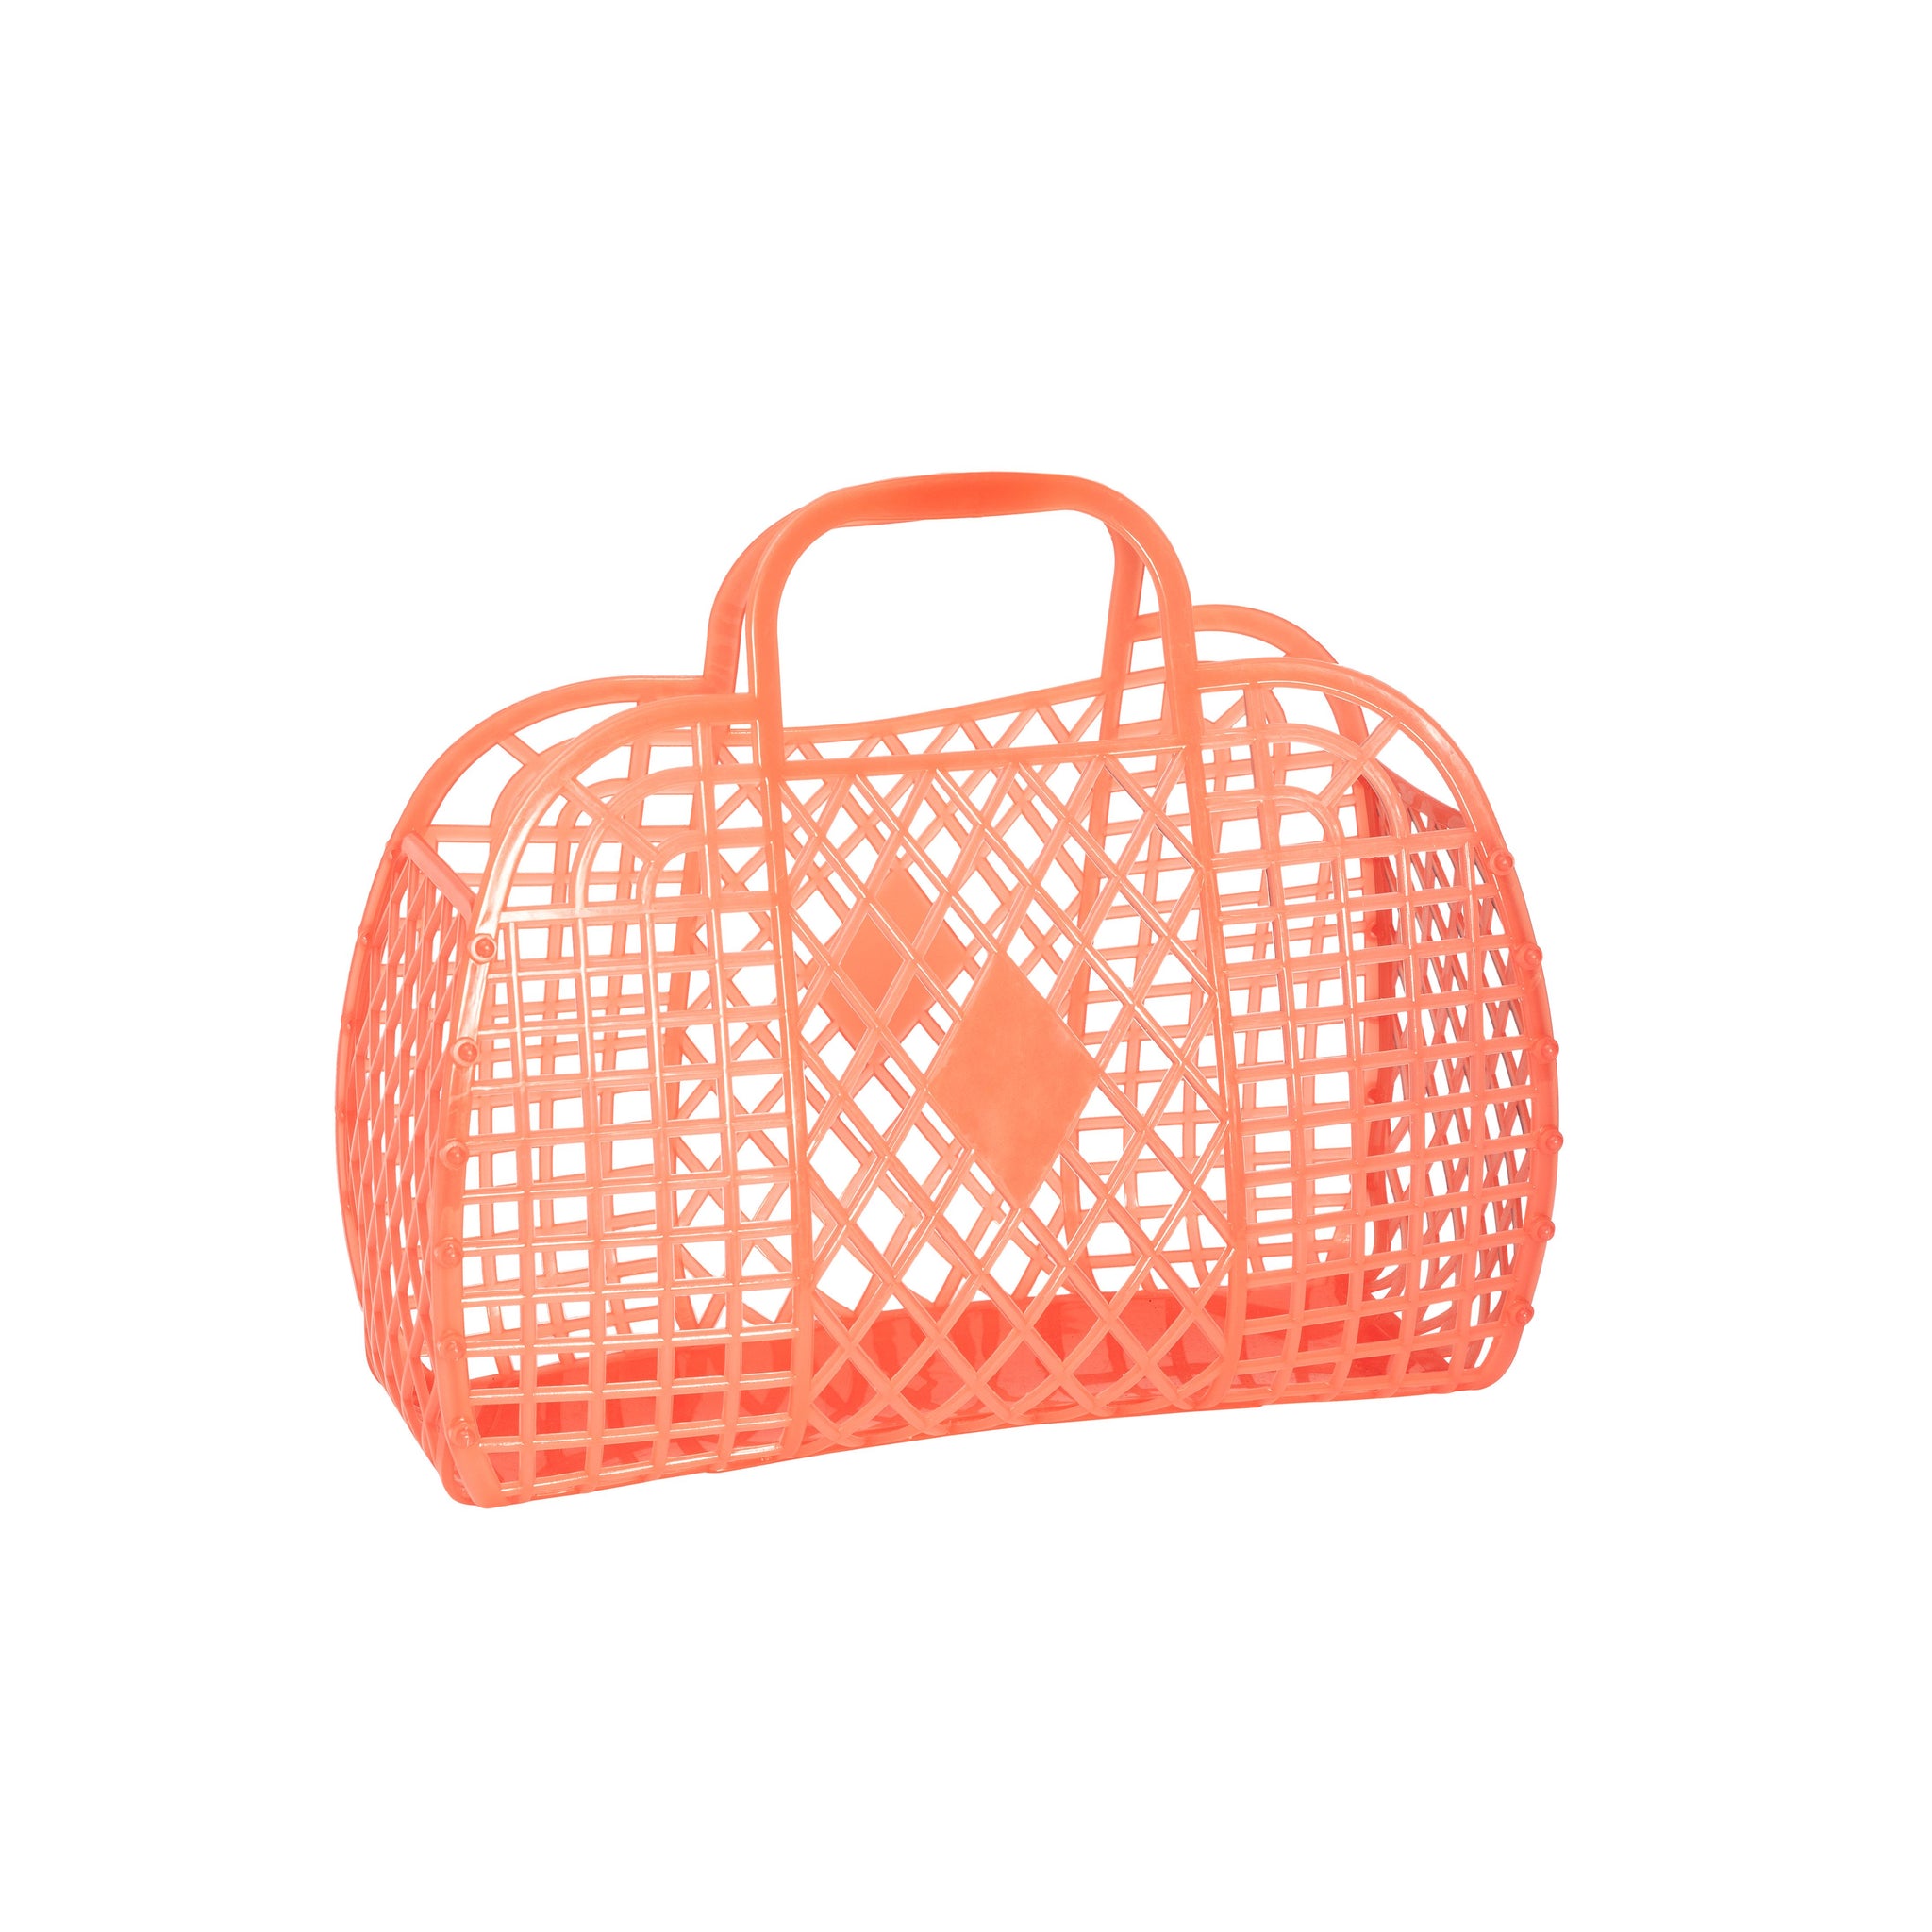 Neon orange small beach bag, A Little Confetti